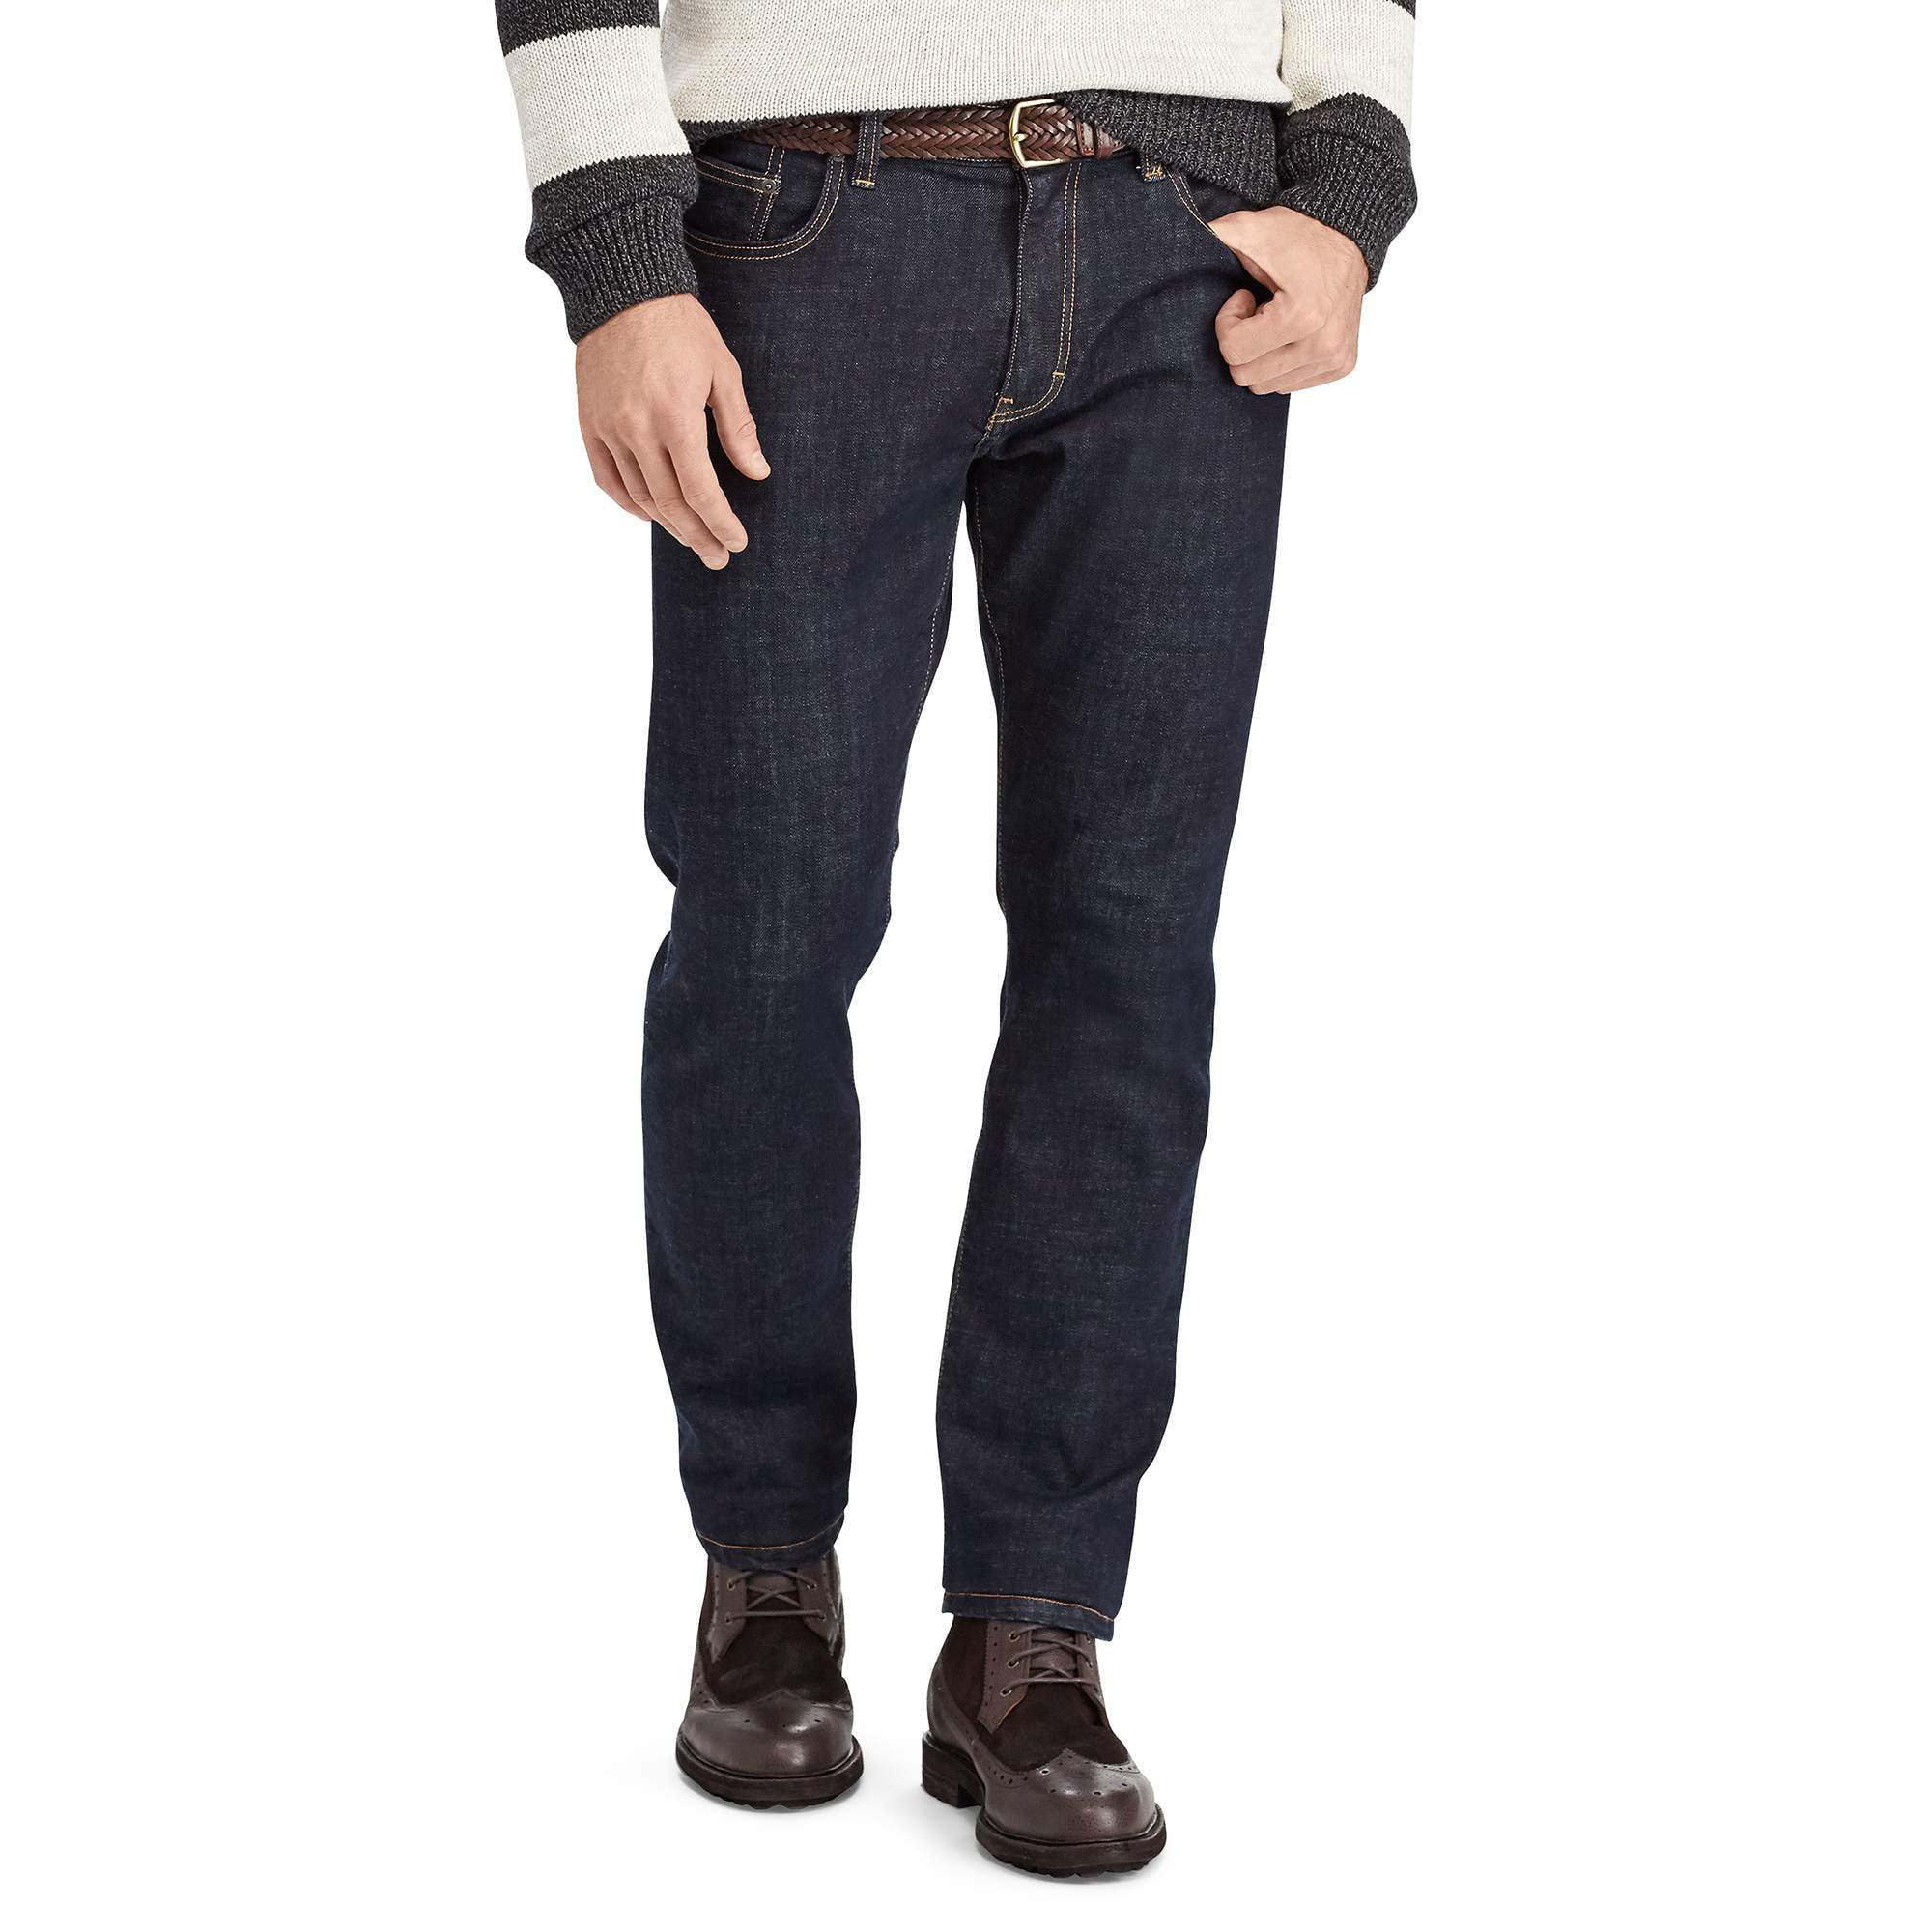 Chaps Men's Straight Fit Jeans - Walmart.com